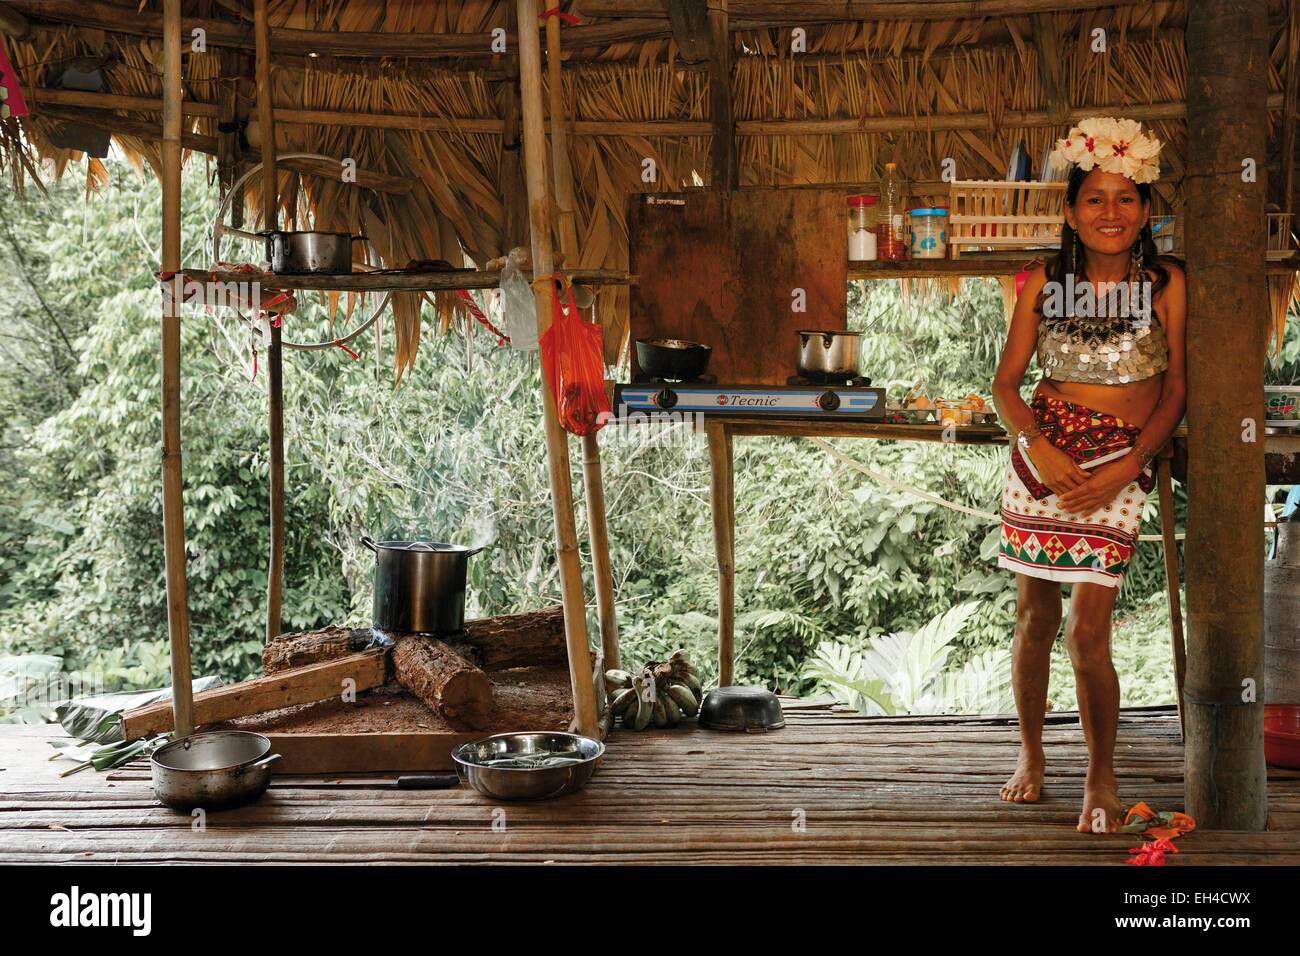 Panama, provincia di Darien, Parco Nazionale del Darién, classificato come patrimonio mondiale dall UNESCO, Embera comunità indigena, ritratto di un Embera donna indigena nella sua casa Foto Stock